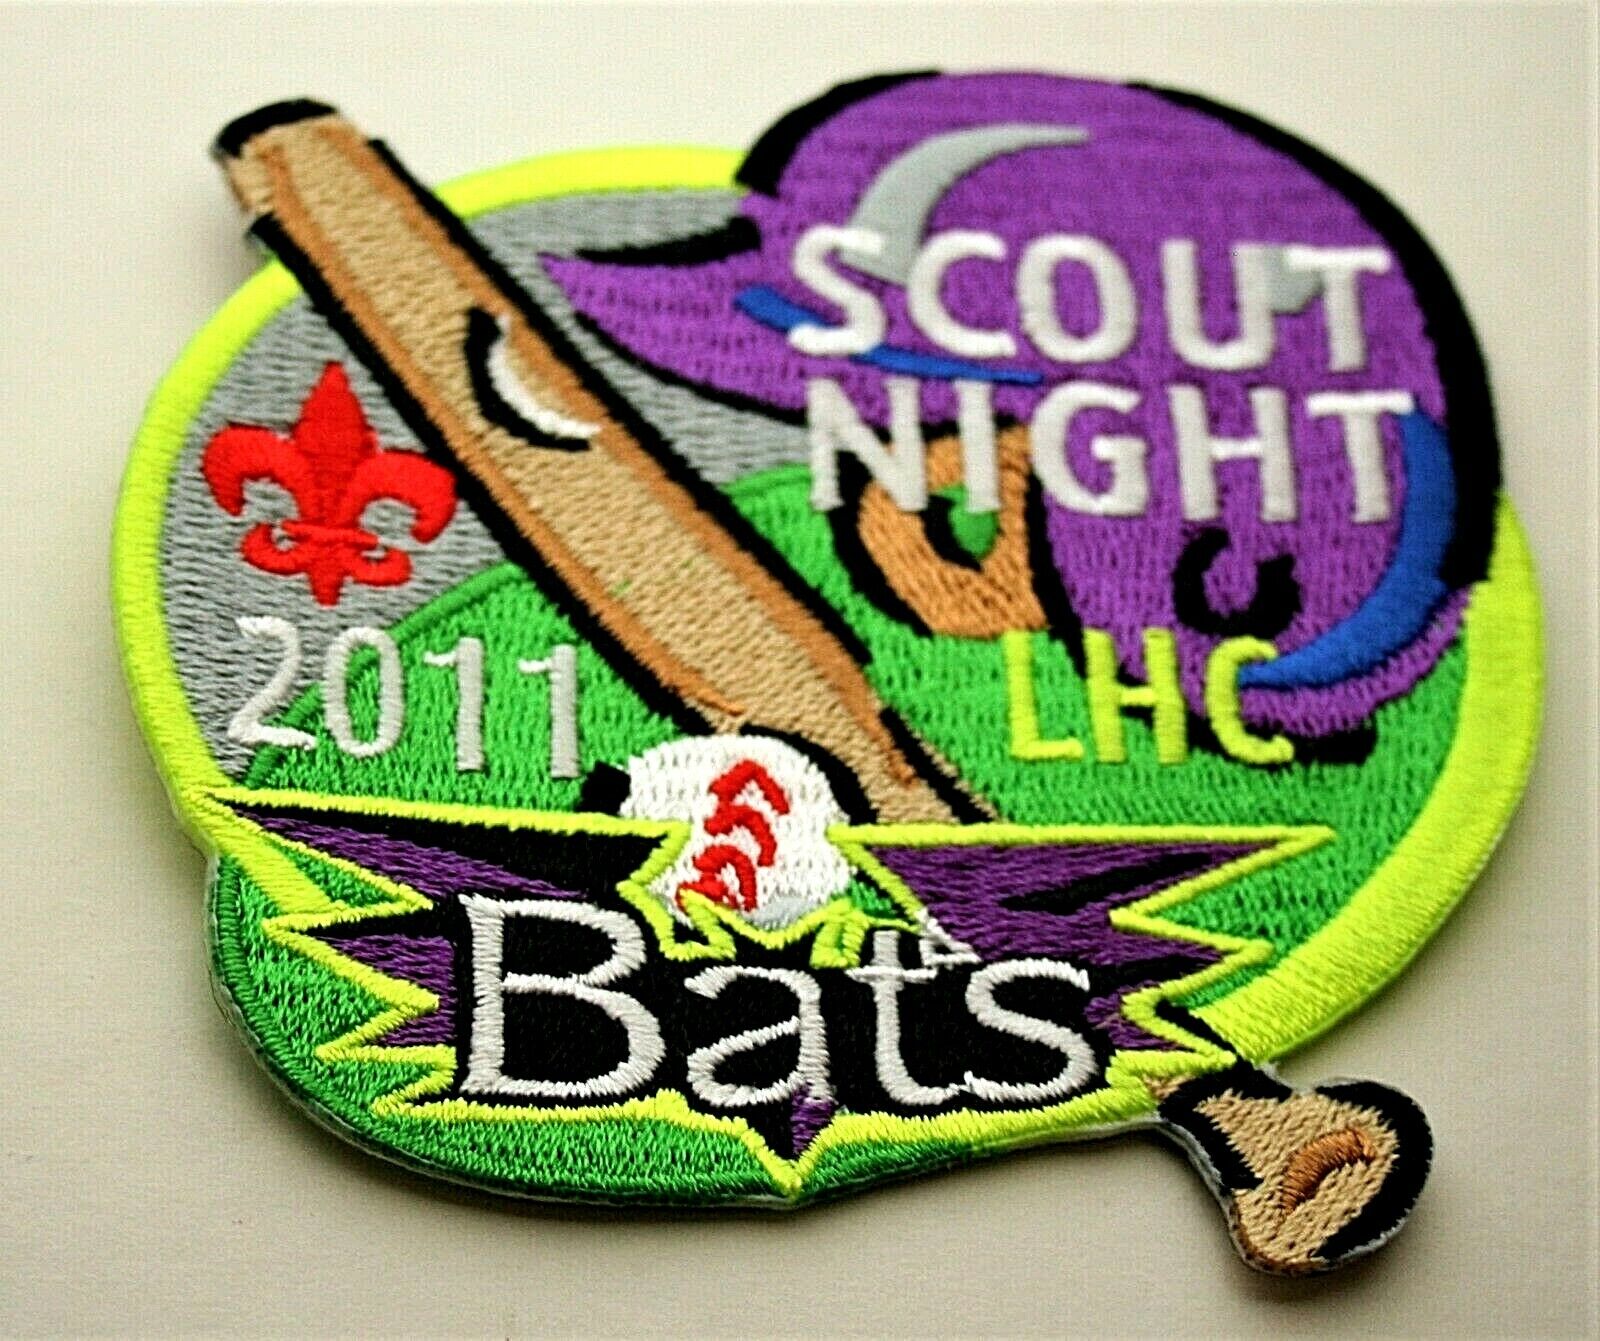 2011 BSA Scout Night Bats LHC Council Boy Scouts Patch New NOS Baseball